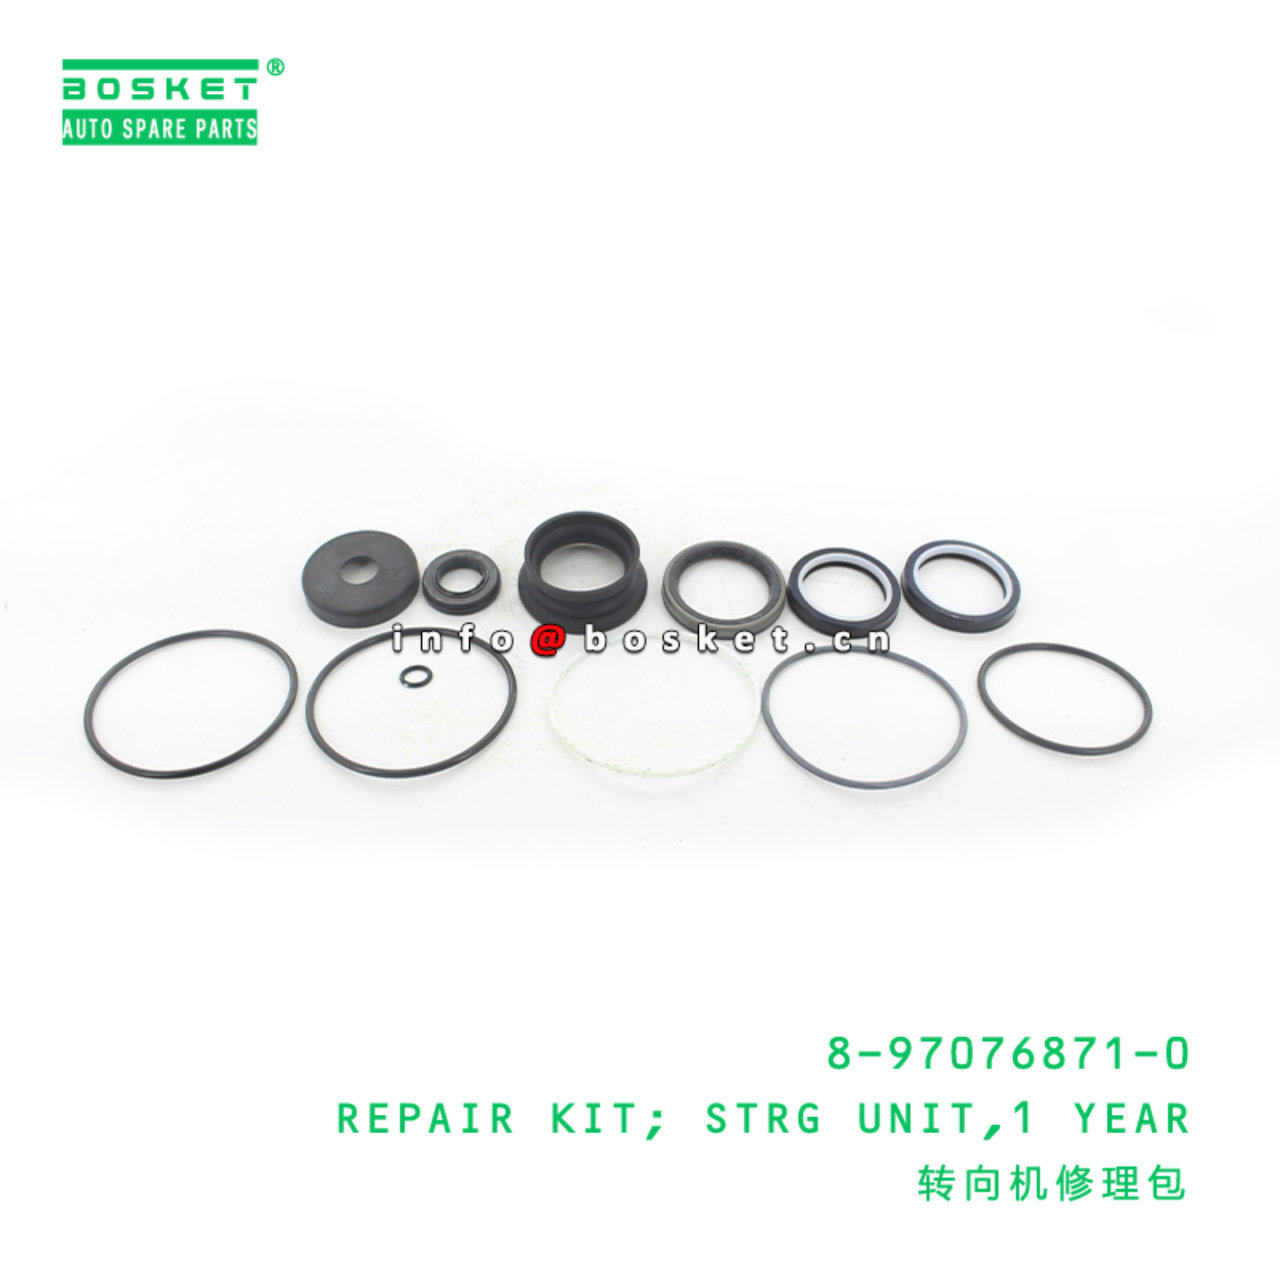 8-97076871-0 1 Year Steering Unit Repair Kit Suitable for ISUZU NKR 8970768710